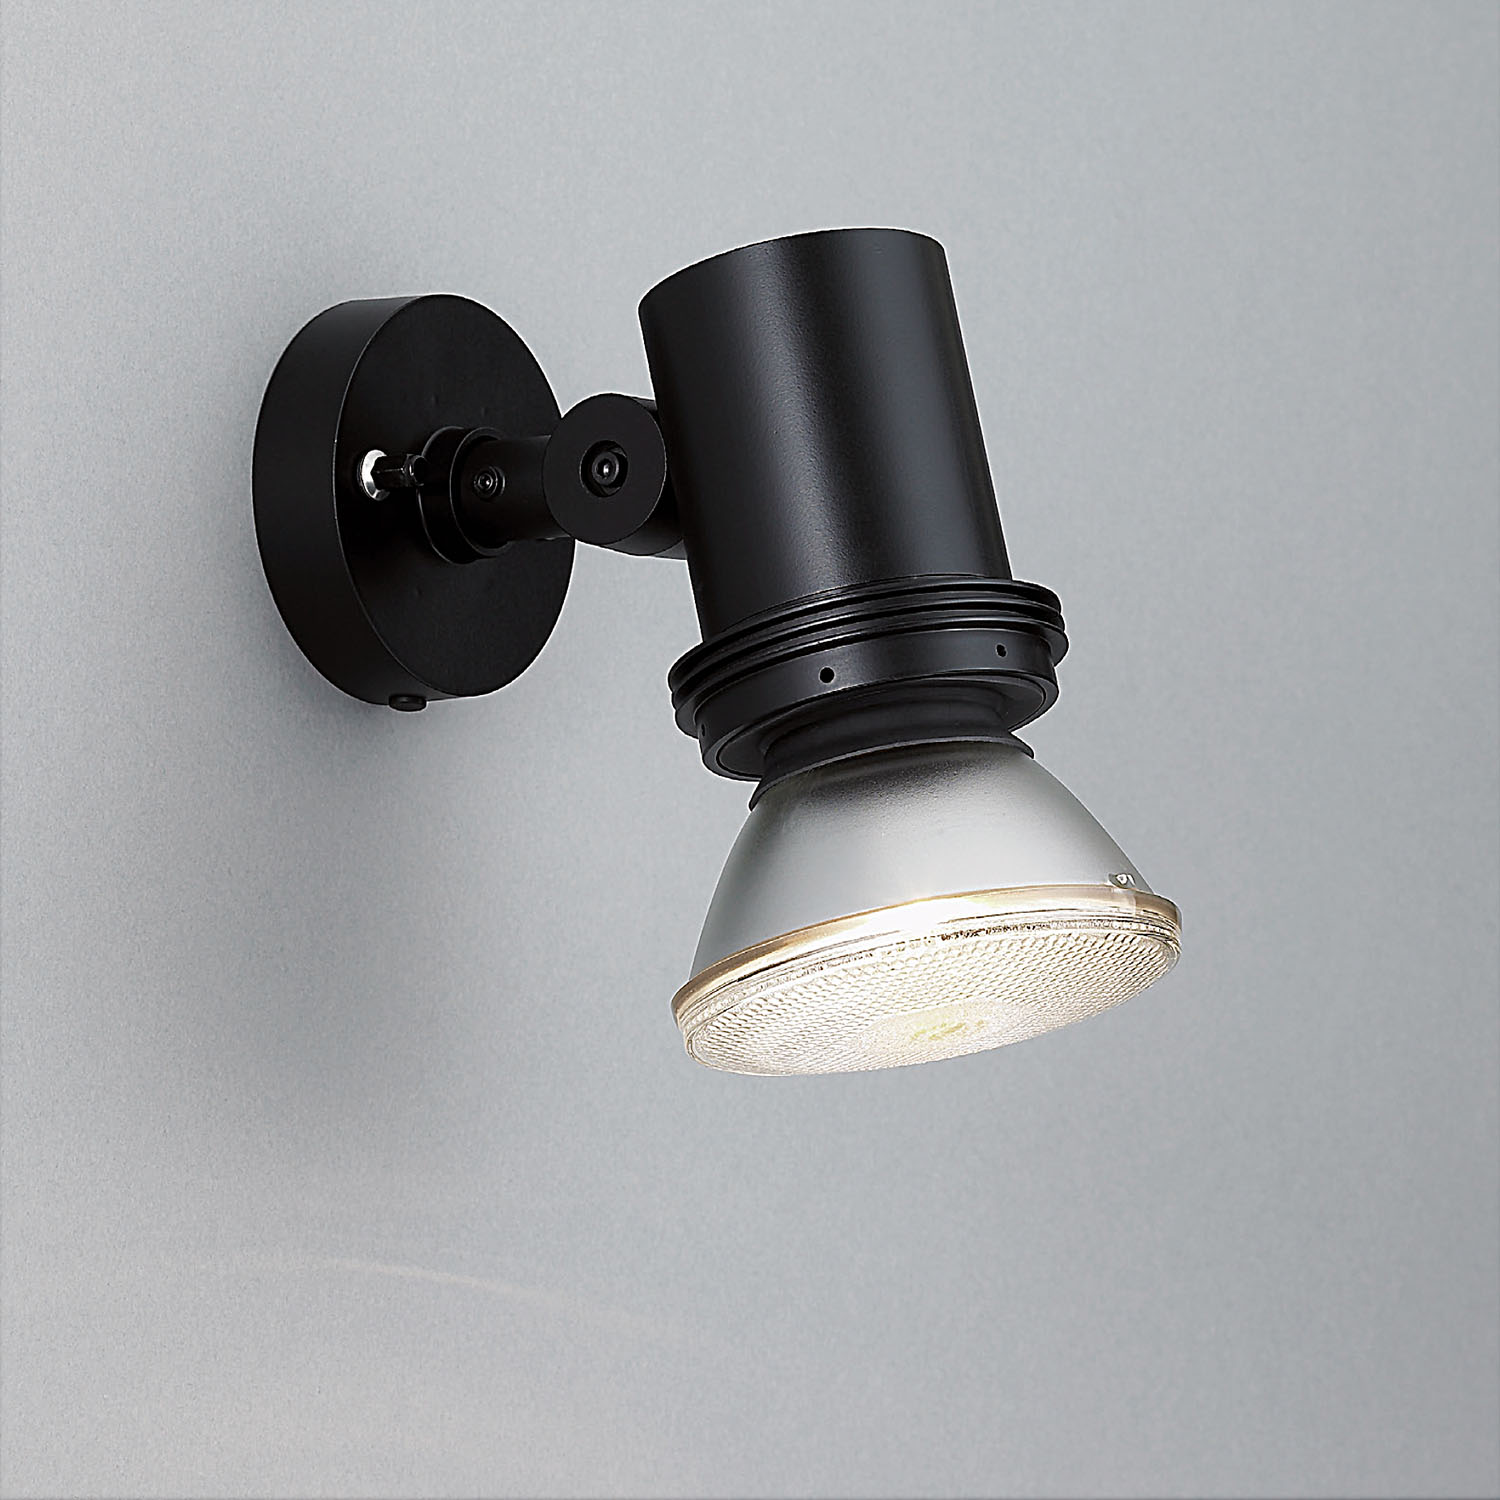 山田照明 山田照明 Compact Spot Neo（コンパクト・スポット・ネオ） 屋外用スポットライト 黒色 LED（昼白色） 36度 AD-3145 -L